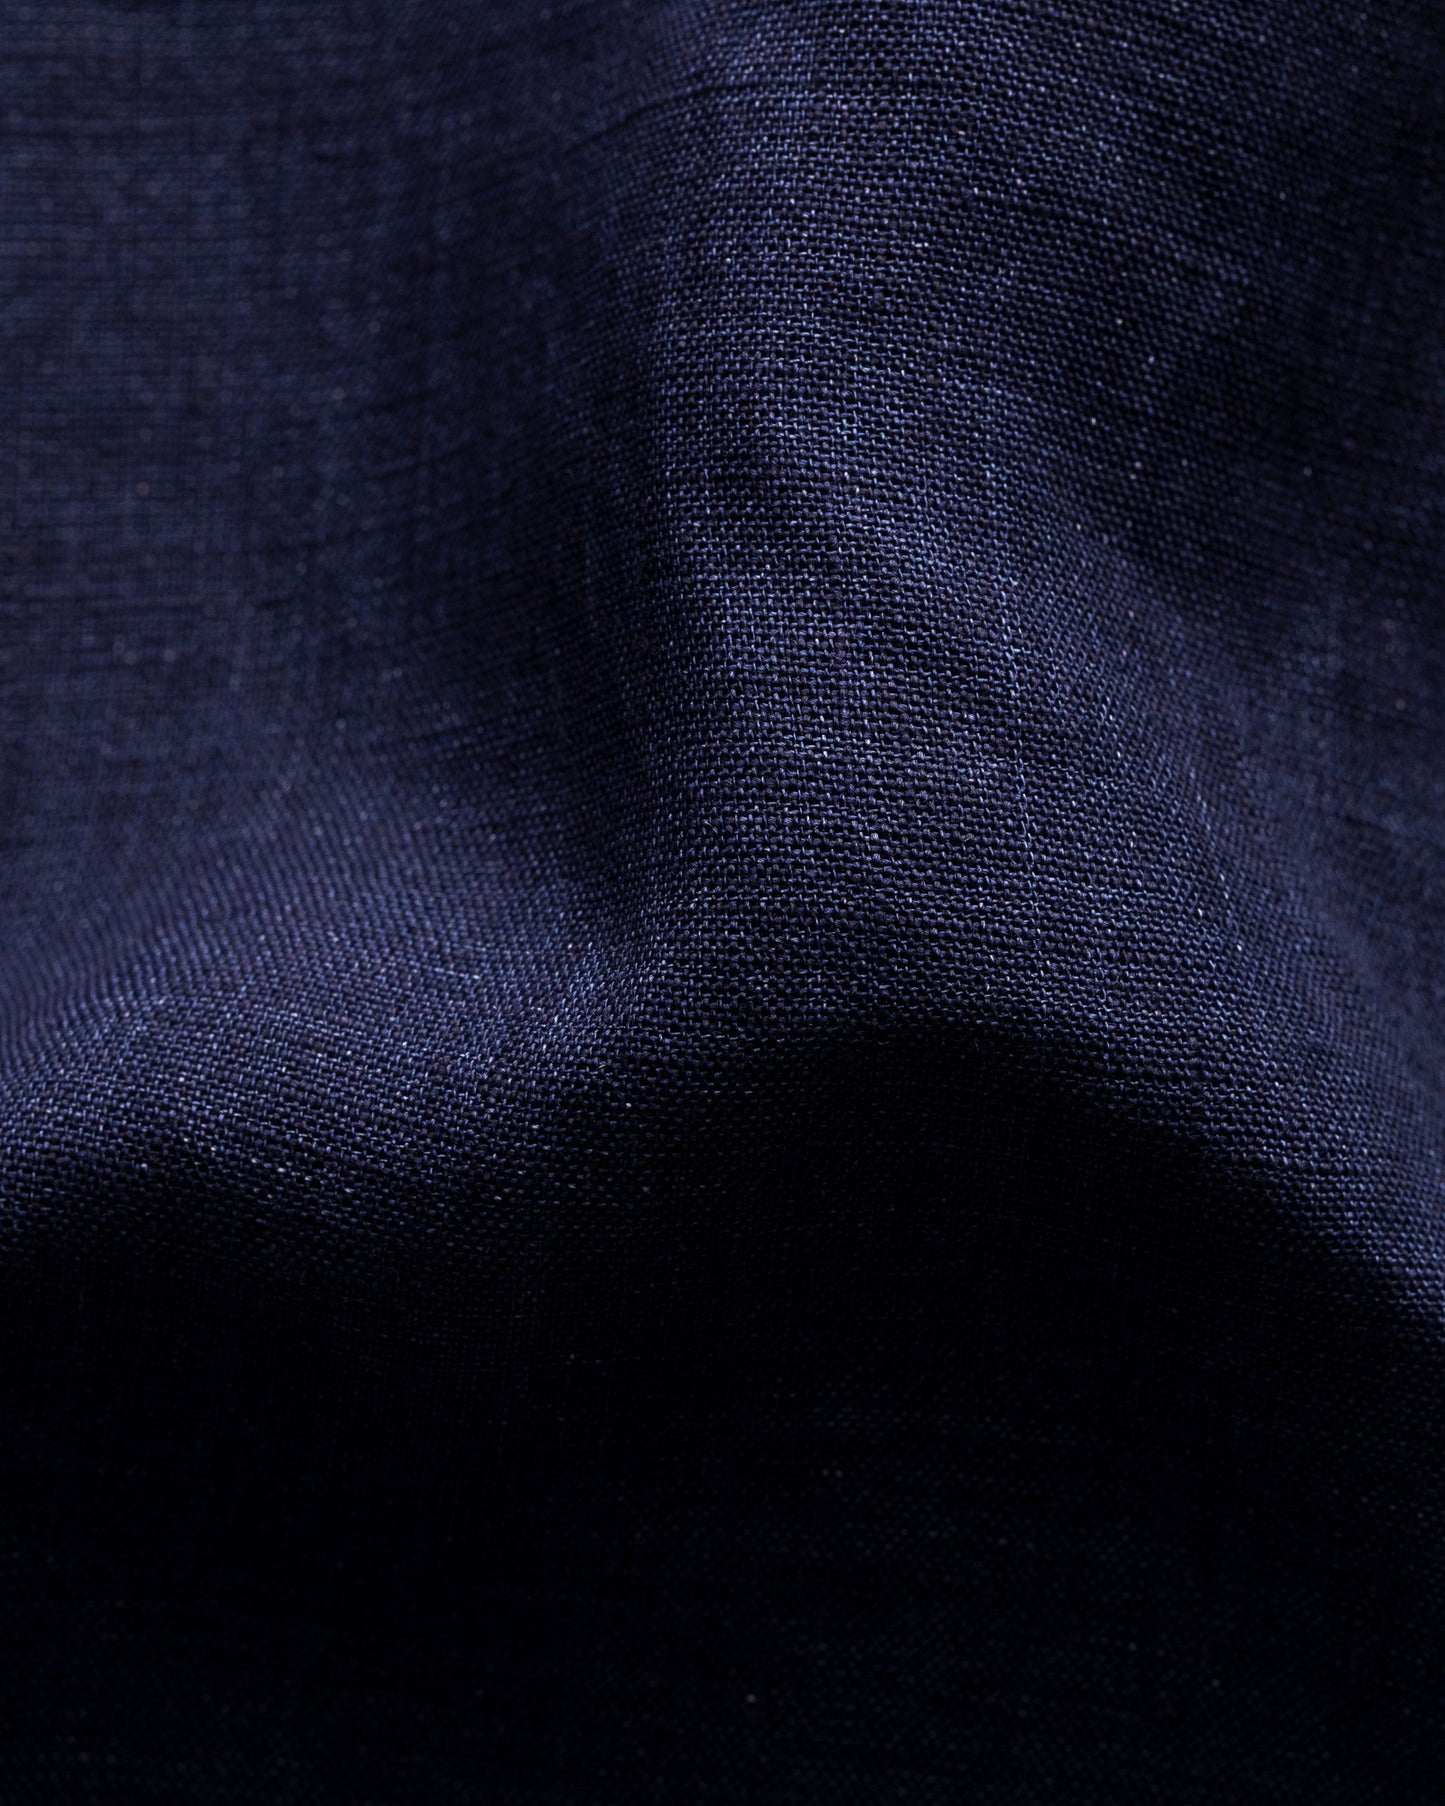 Navy Blue SS Linen Shirt